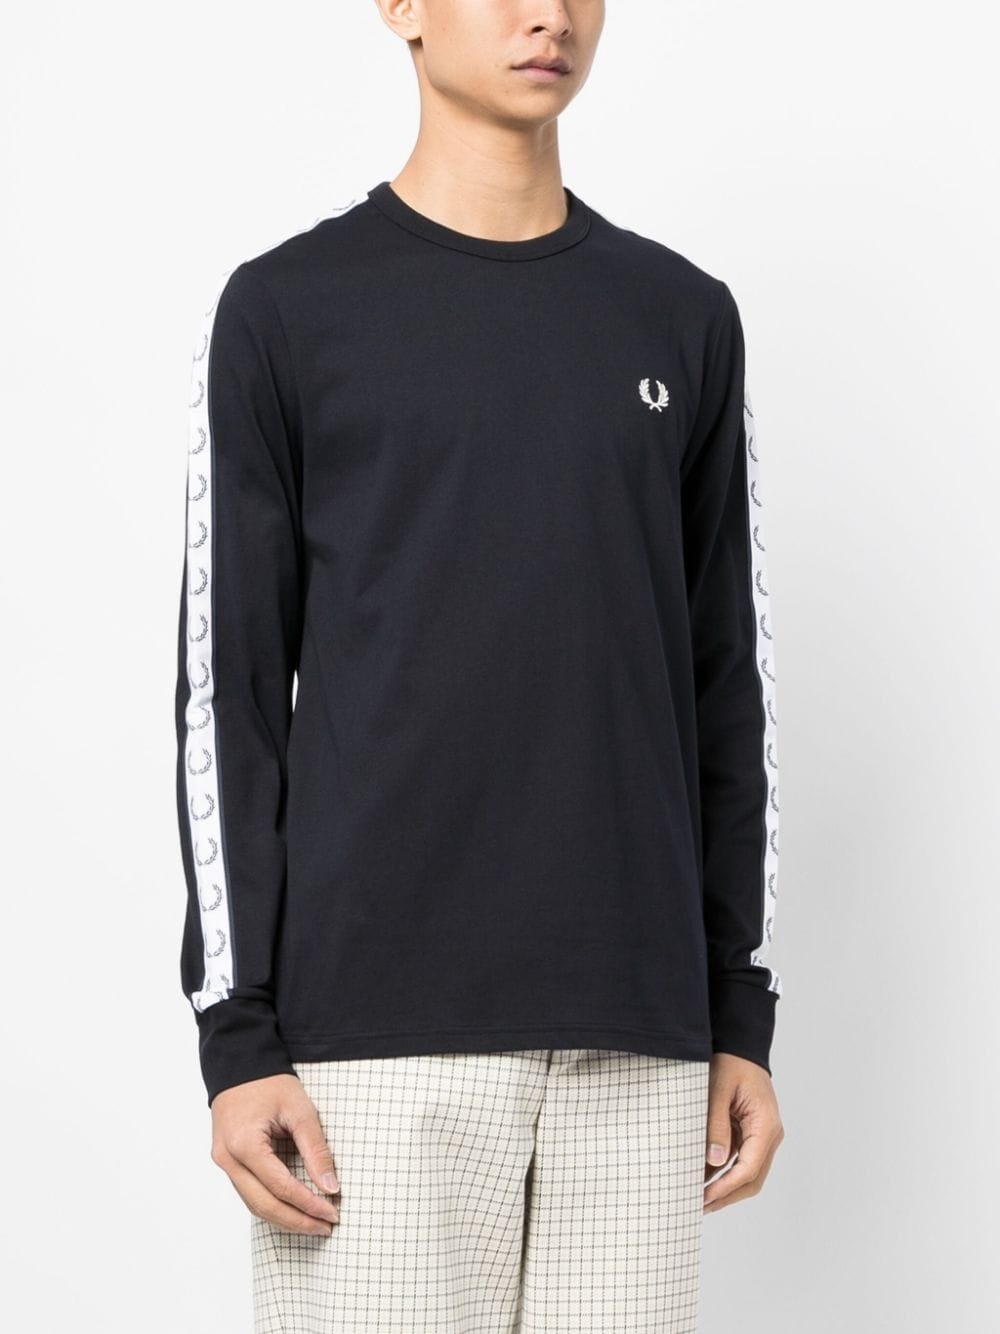 embroidered-logo long-sleeve sweatshirt - 4